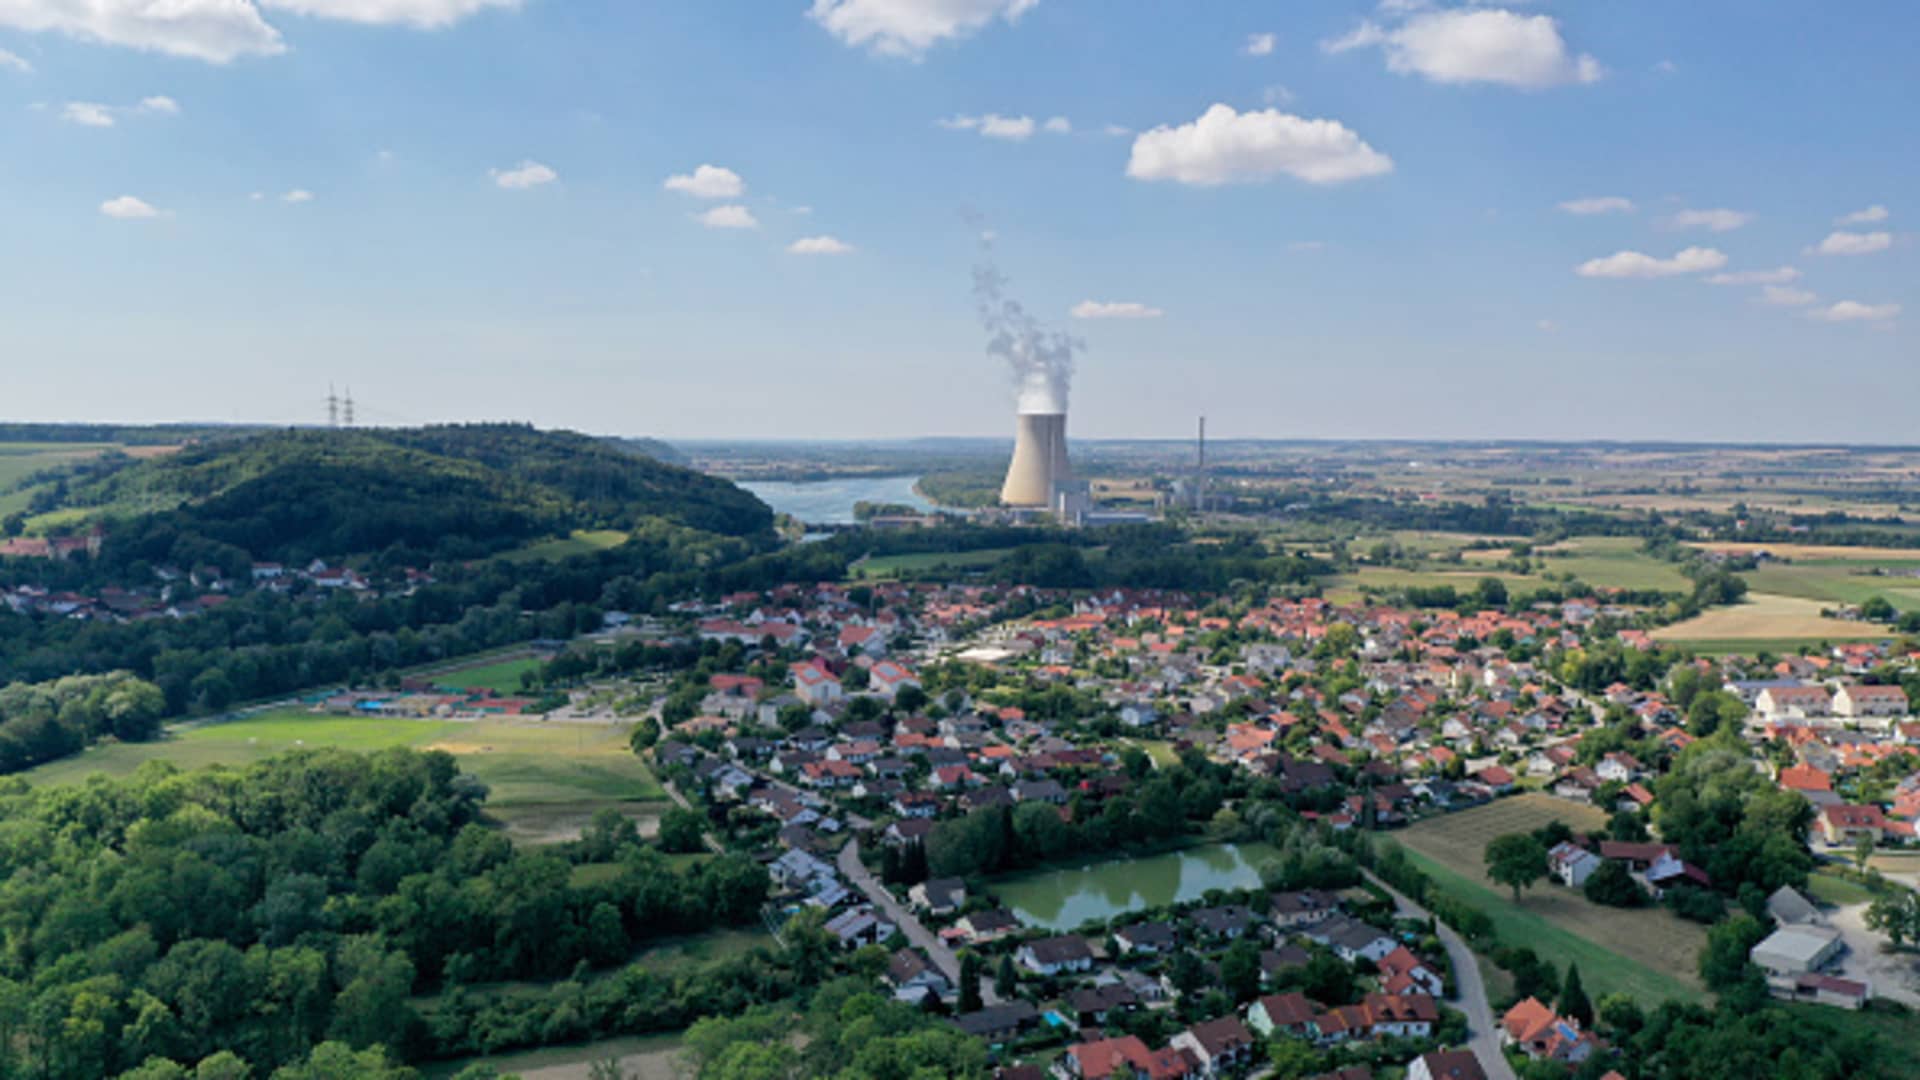 Deutschland wird zwei Kernkraftwerke als Backup vorhalten und Kohle verbrennen